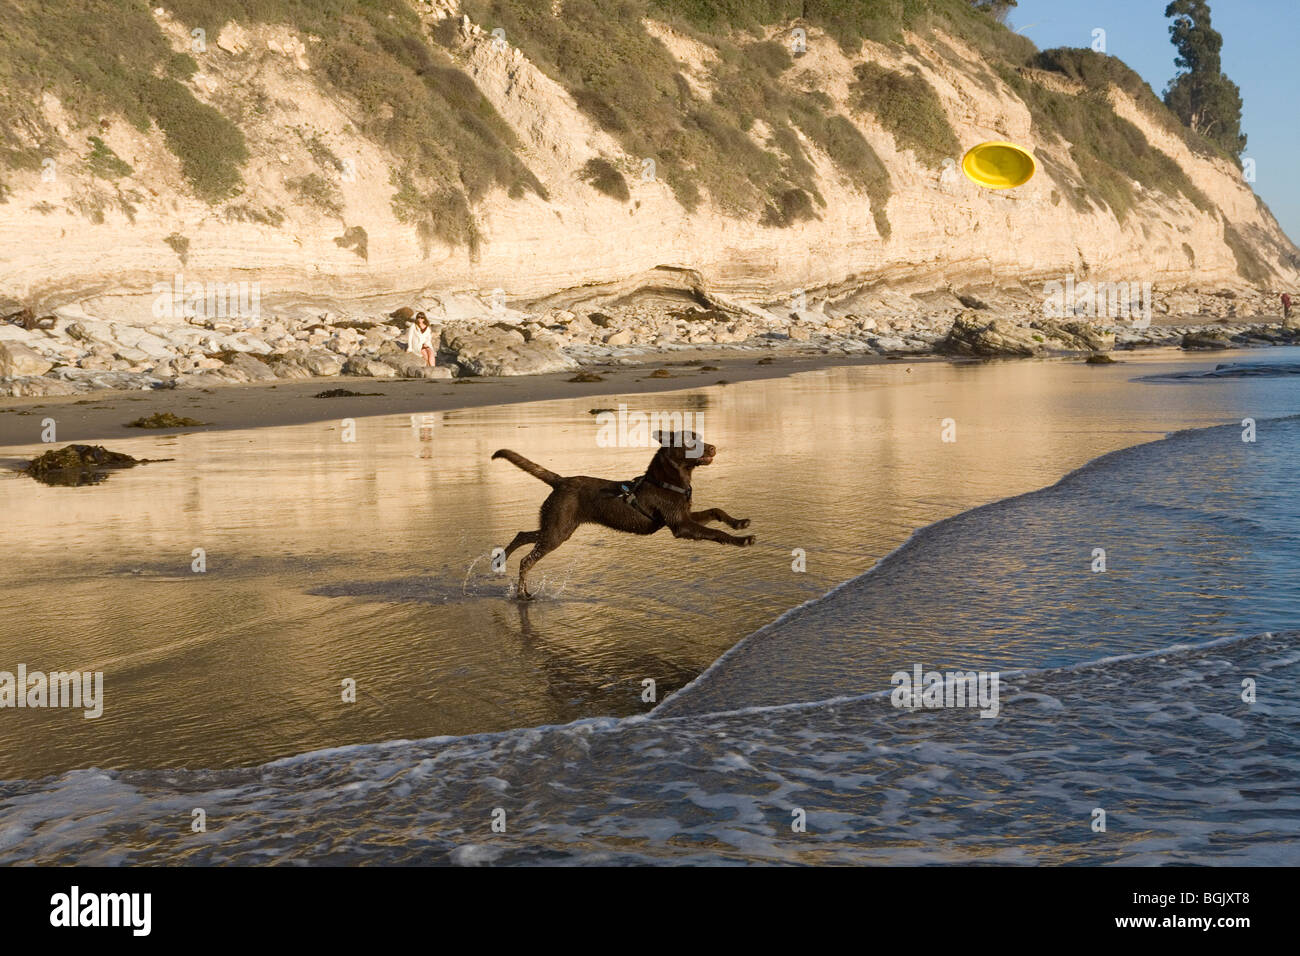 A chocolate Labrador at the beach. Stock Photo